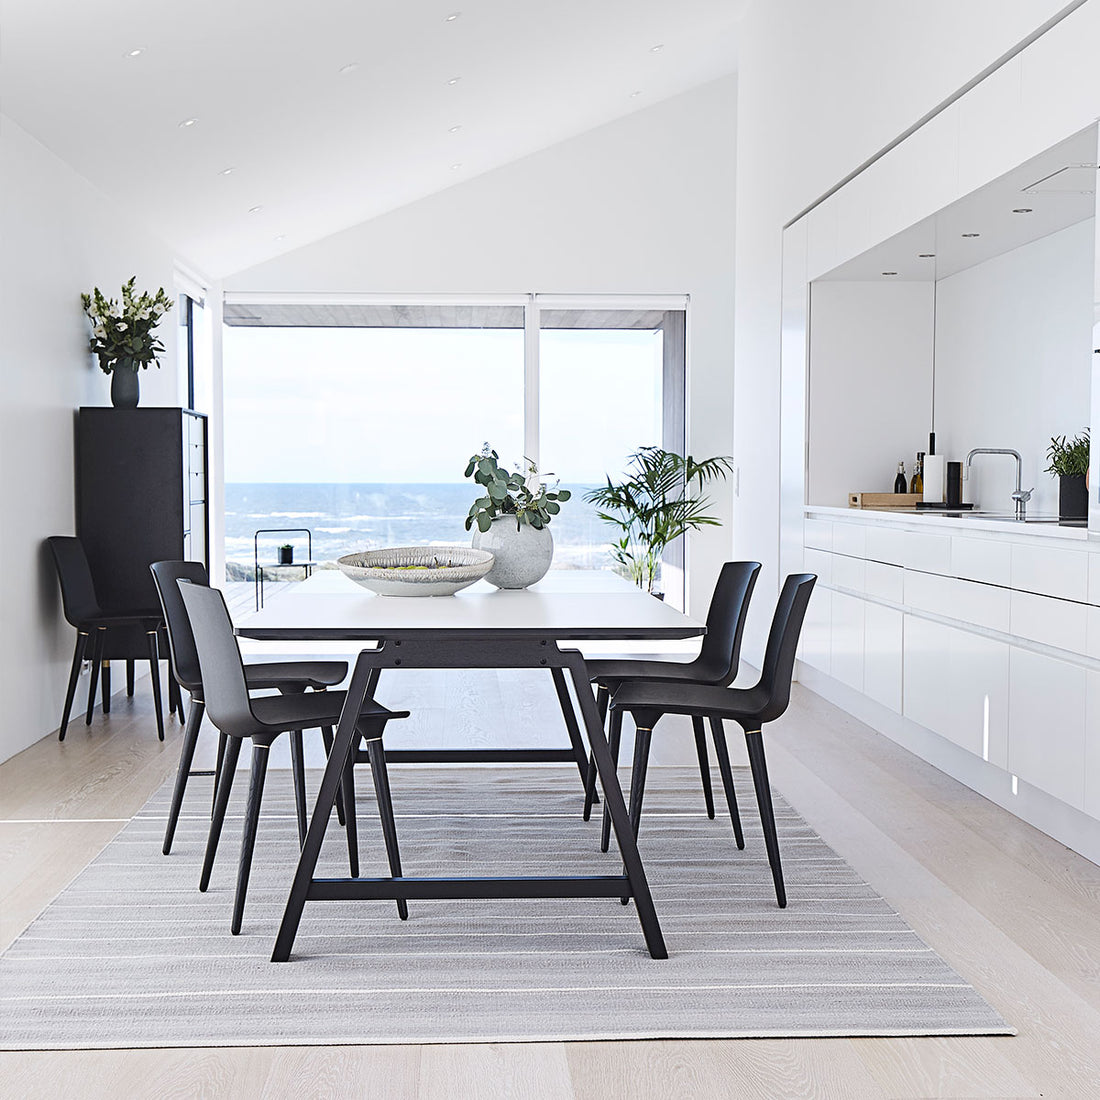 Andersen Furniture T1 udtræksbord i hvid laminat - understel i sort - 88x160xH72,5 - DesignGaragen.dk.